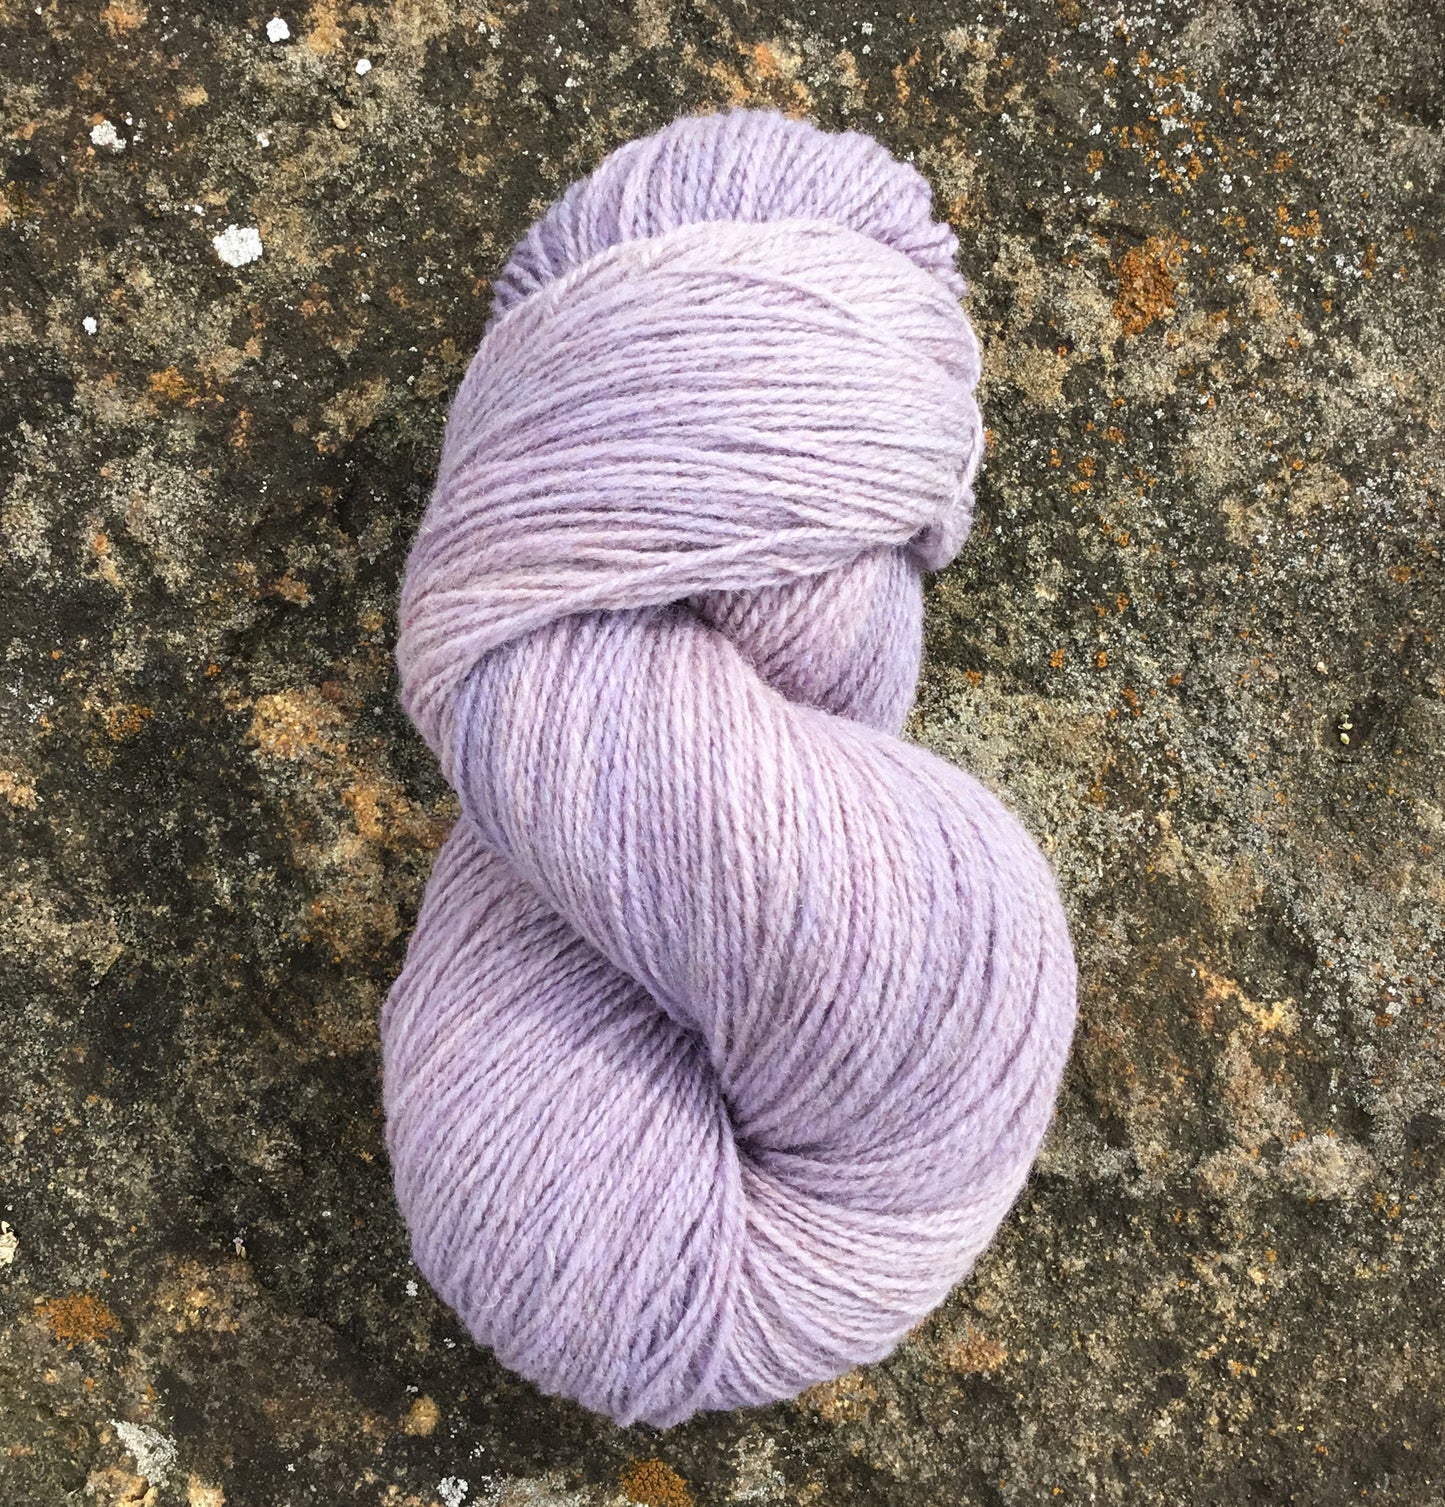 Serenity Purple Fingering Wool Yarn (80 Merino/20 Romney) 2 ply - 4 oz skeins